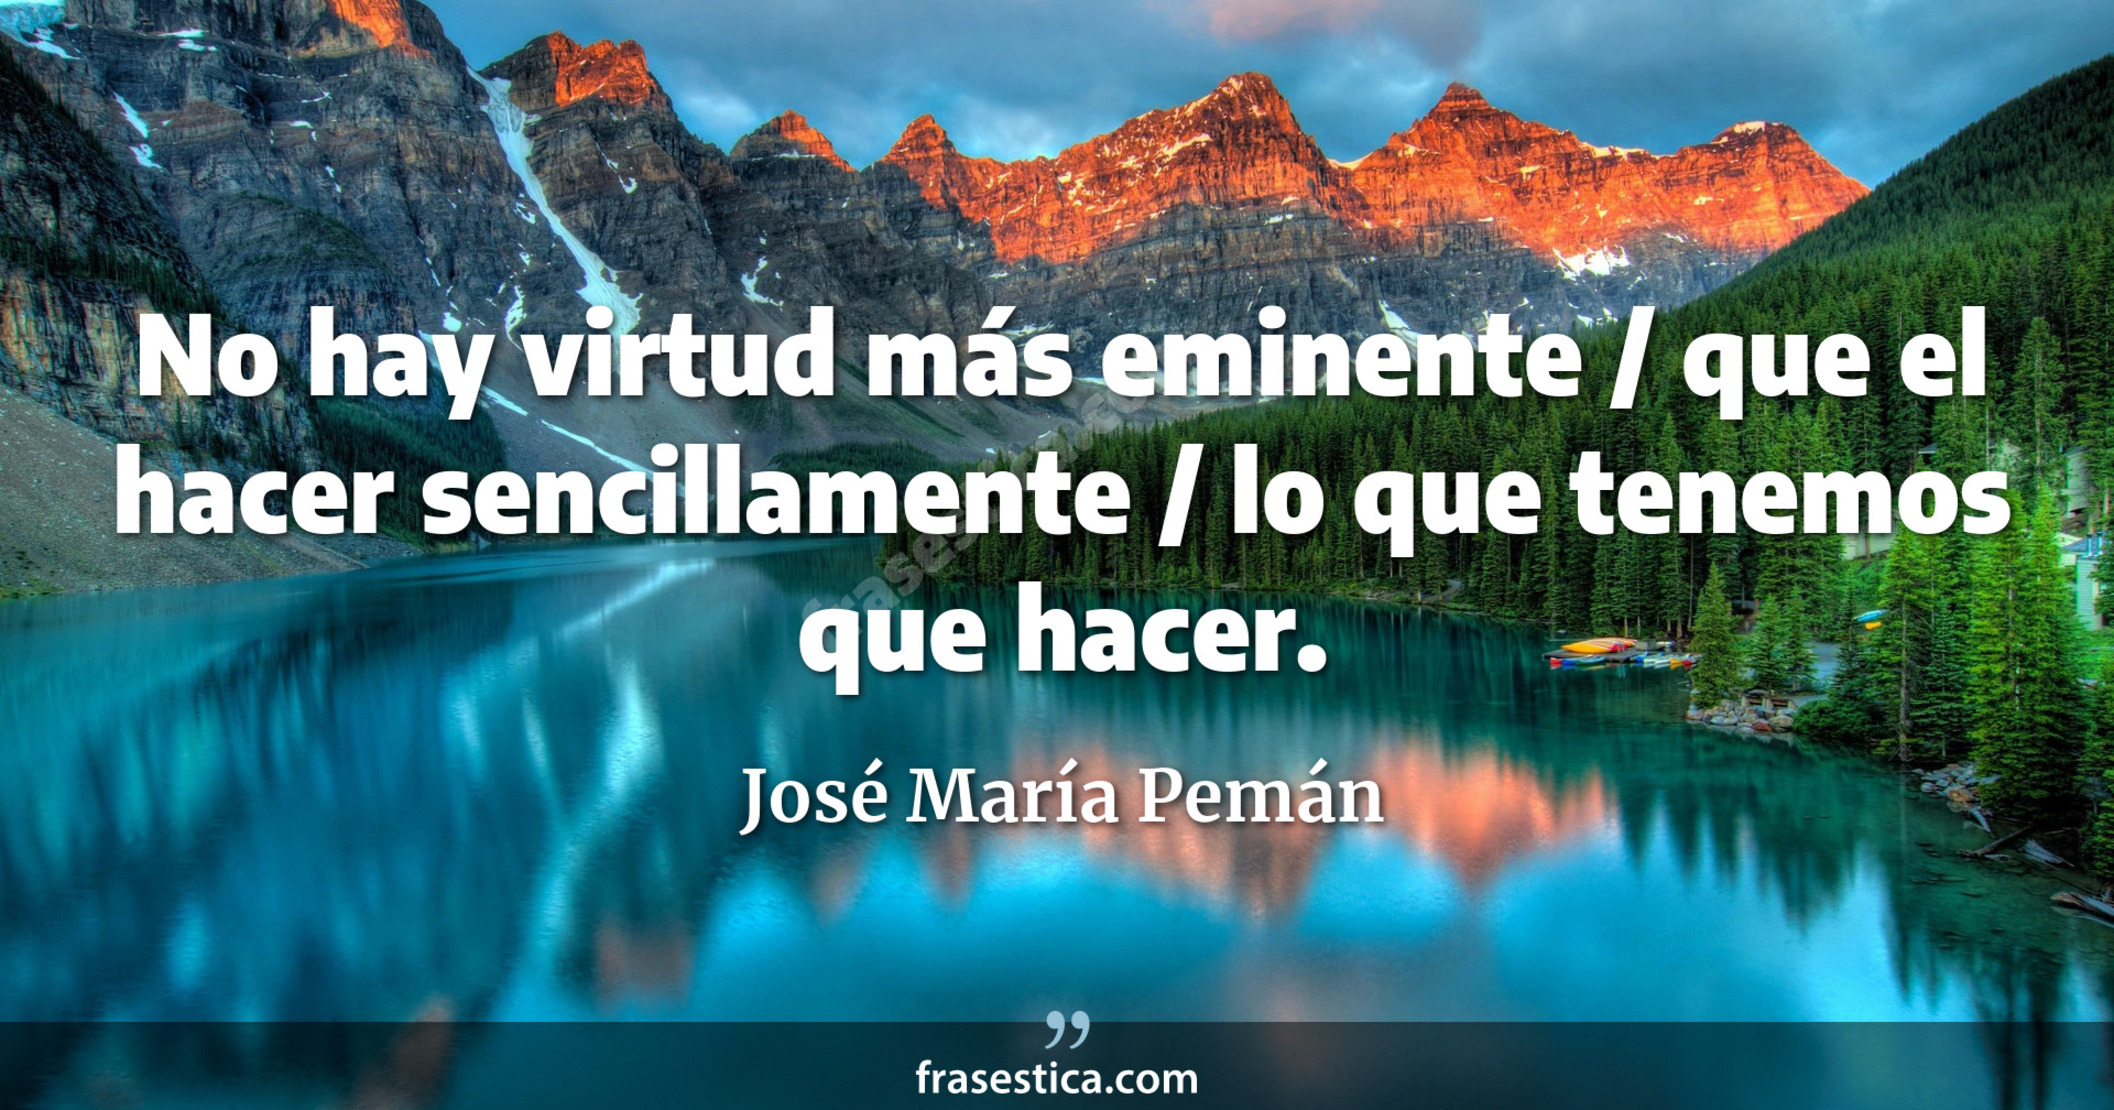 No hay virtud más eminente / que el hacer sencillamente / lo que tenemos que hacer. - José María Pemán